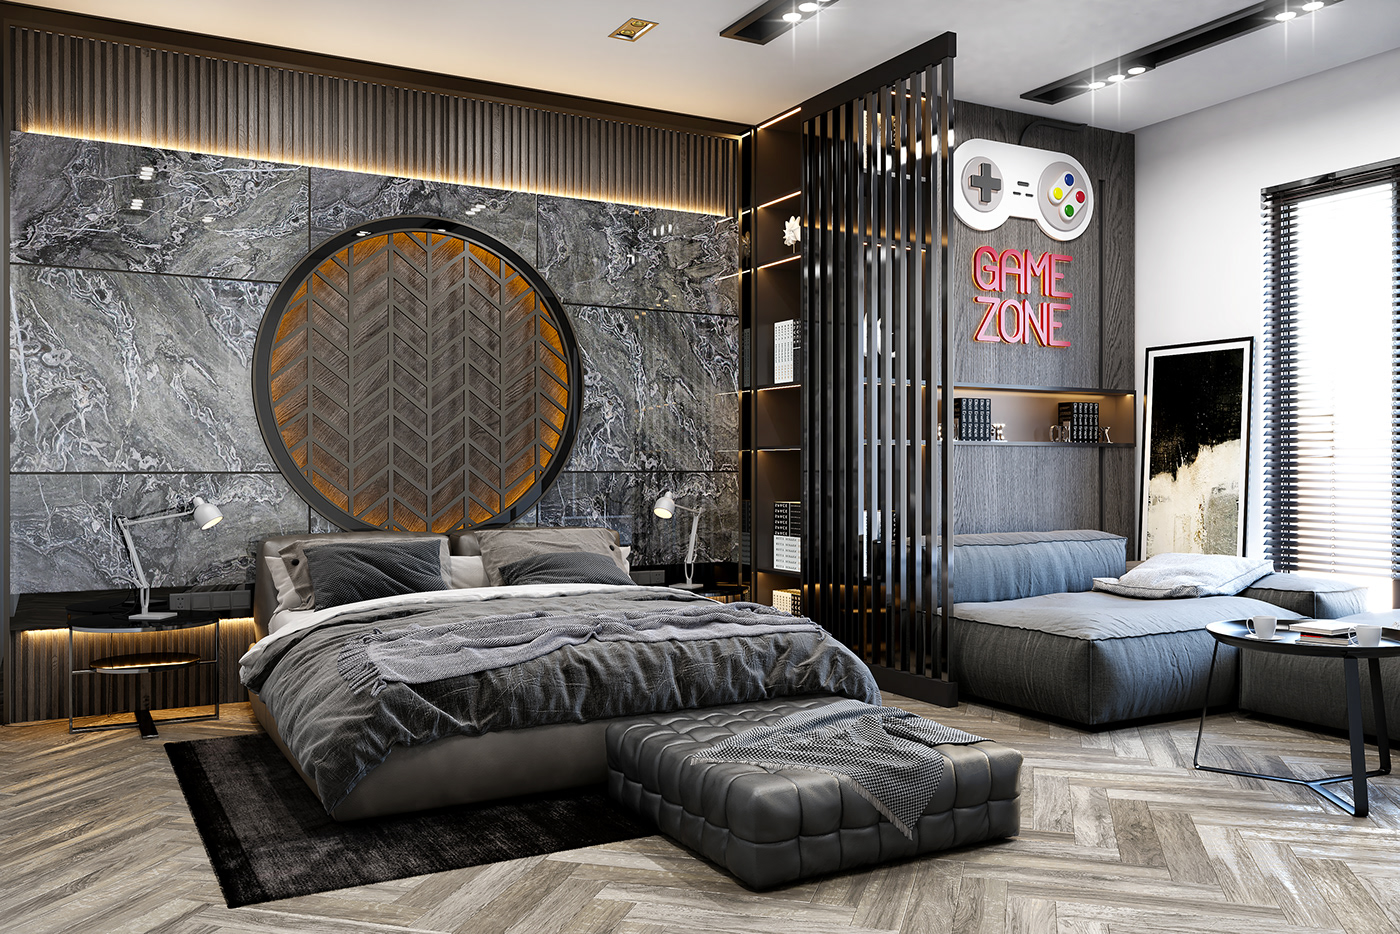 Gamer Bedroom Design on Behance